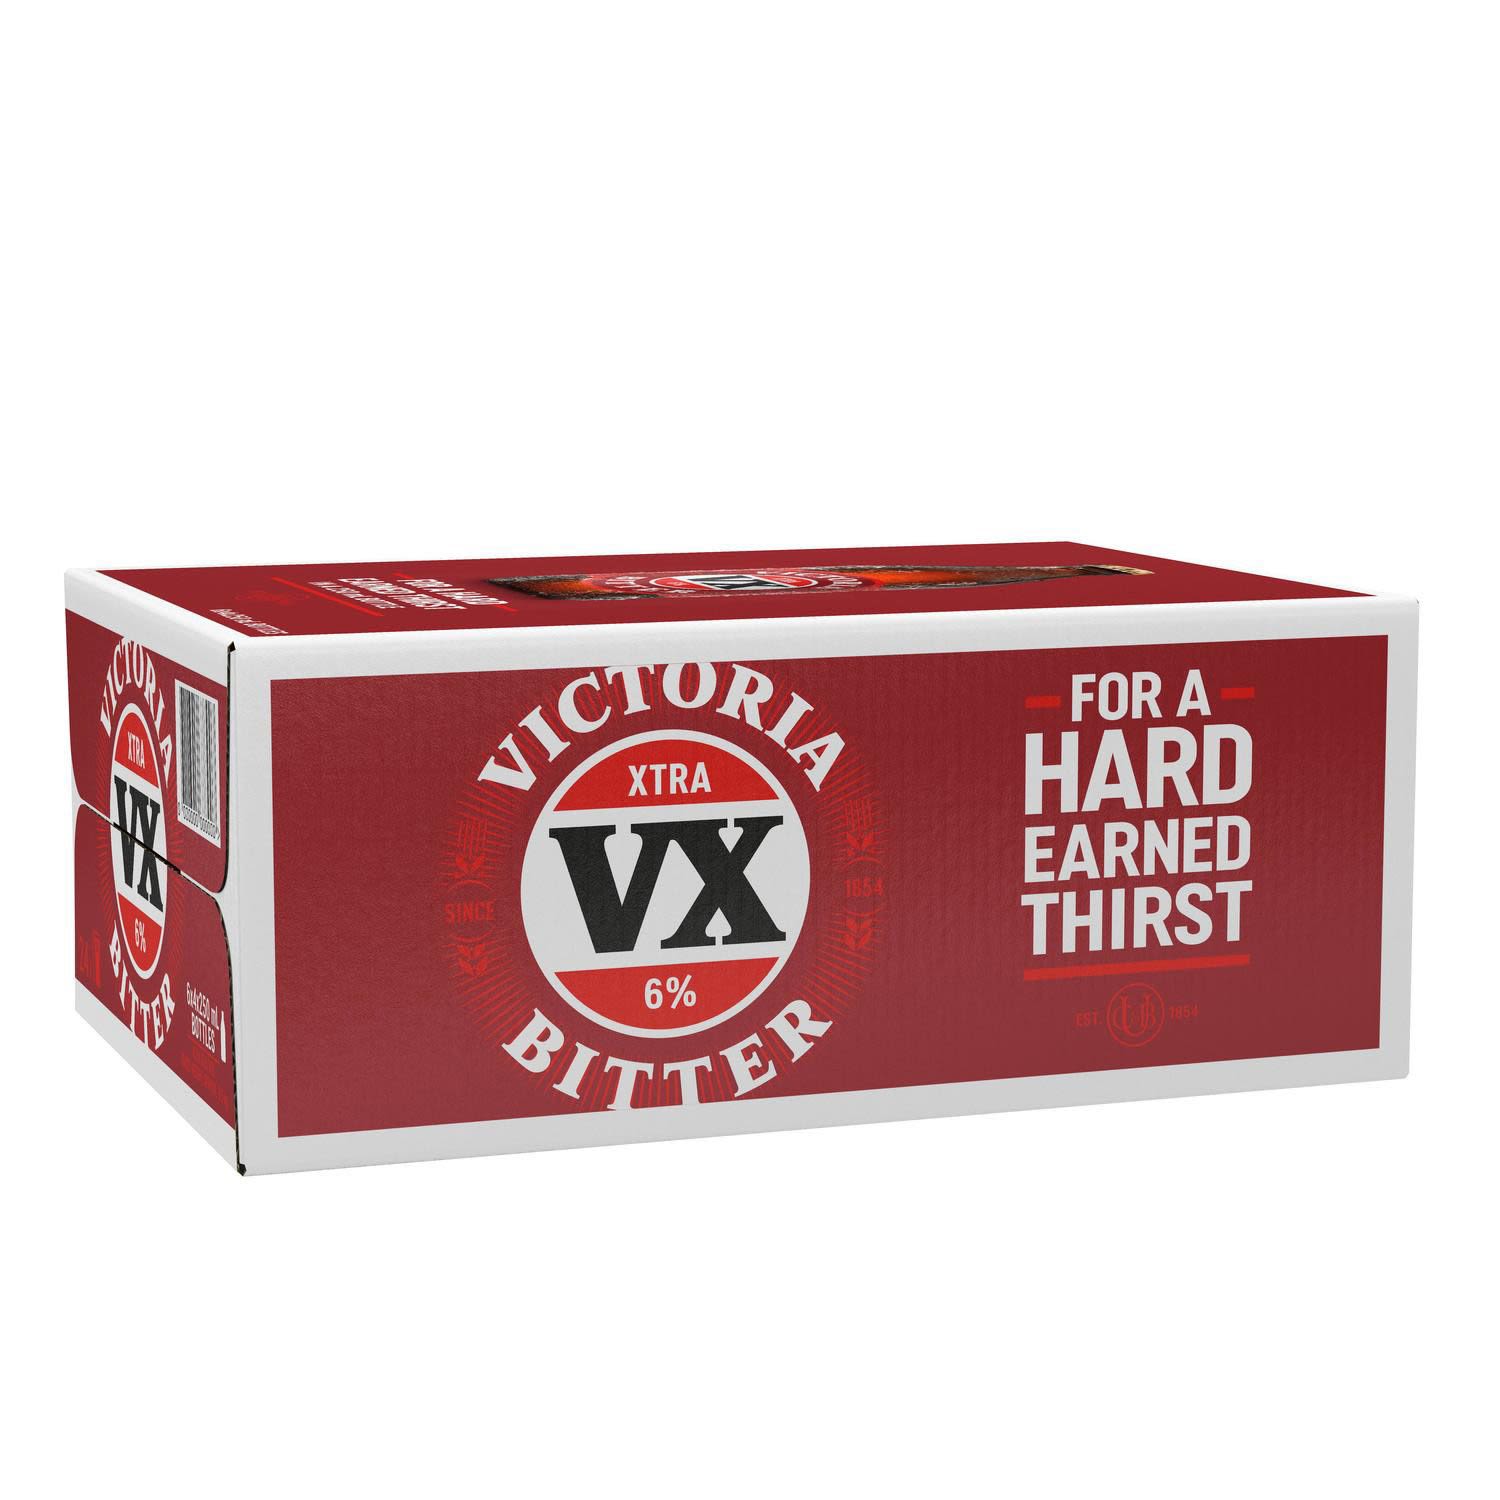 Victoria Bitter VX XTRA Bottle 250mL 24 Pack